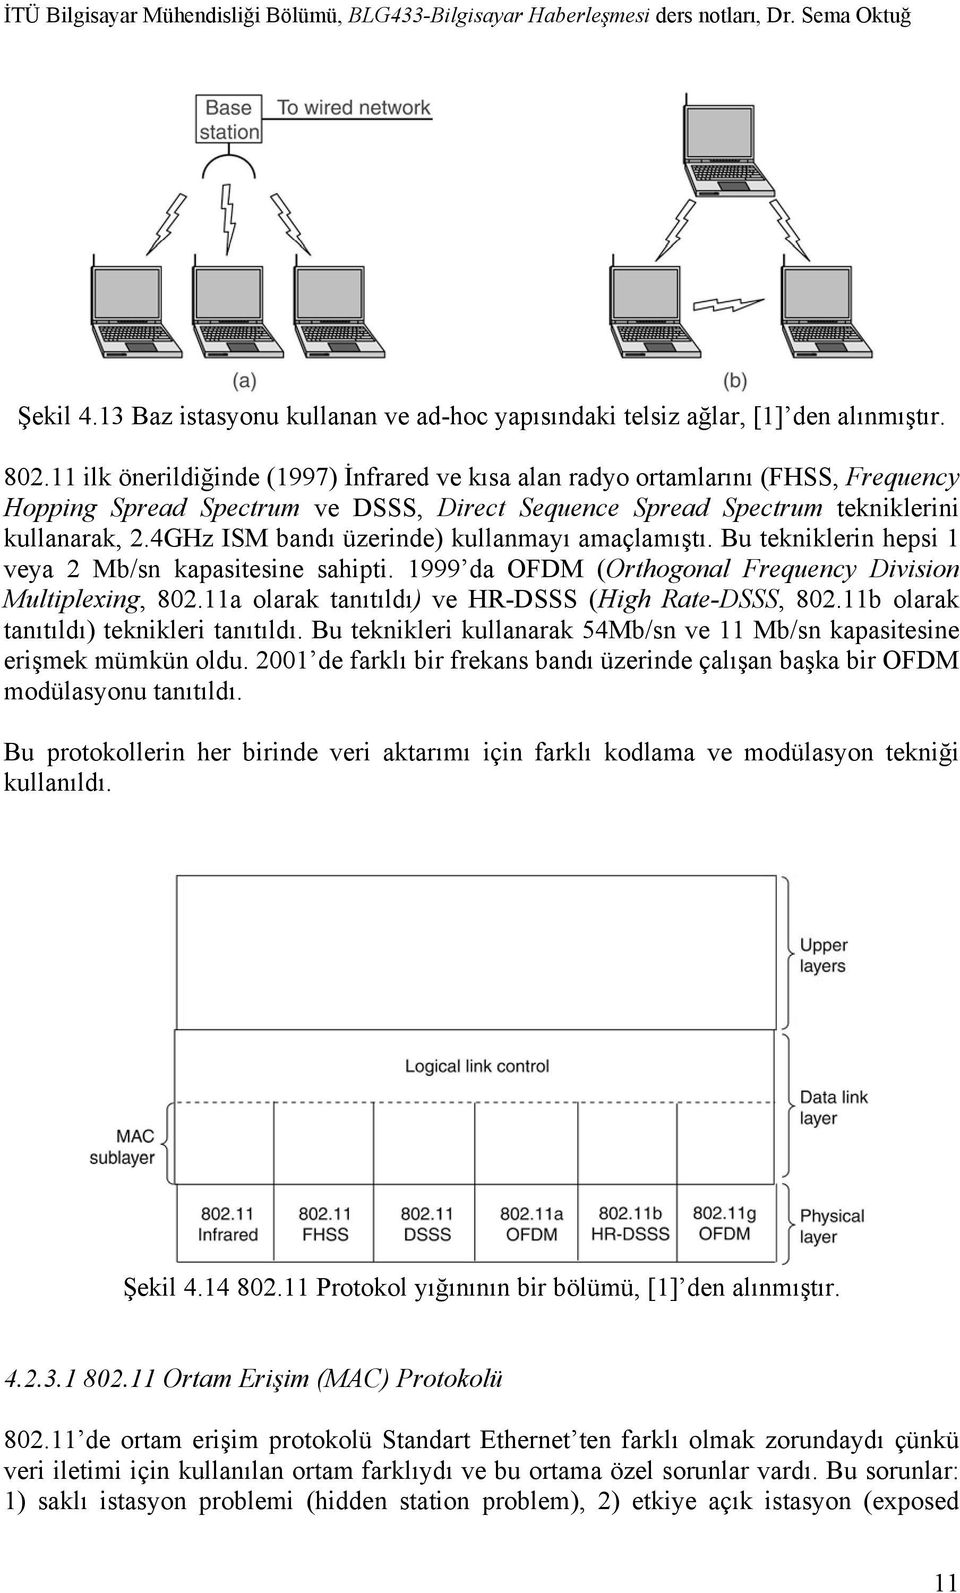 4GHz ISM bandı üzerinde) kullanmayı amaçlamıştı. Bu tekniklerin hepsi 1 veya 2 Mb/sn kapasitesine sahipti. 1999 da OFDM (Orthogonal Frequency Division Multiplexing, 802.